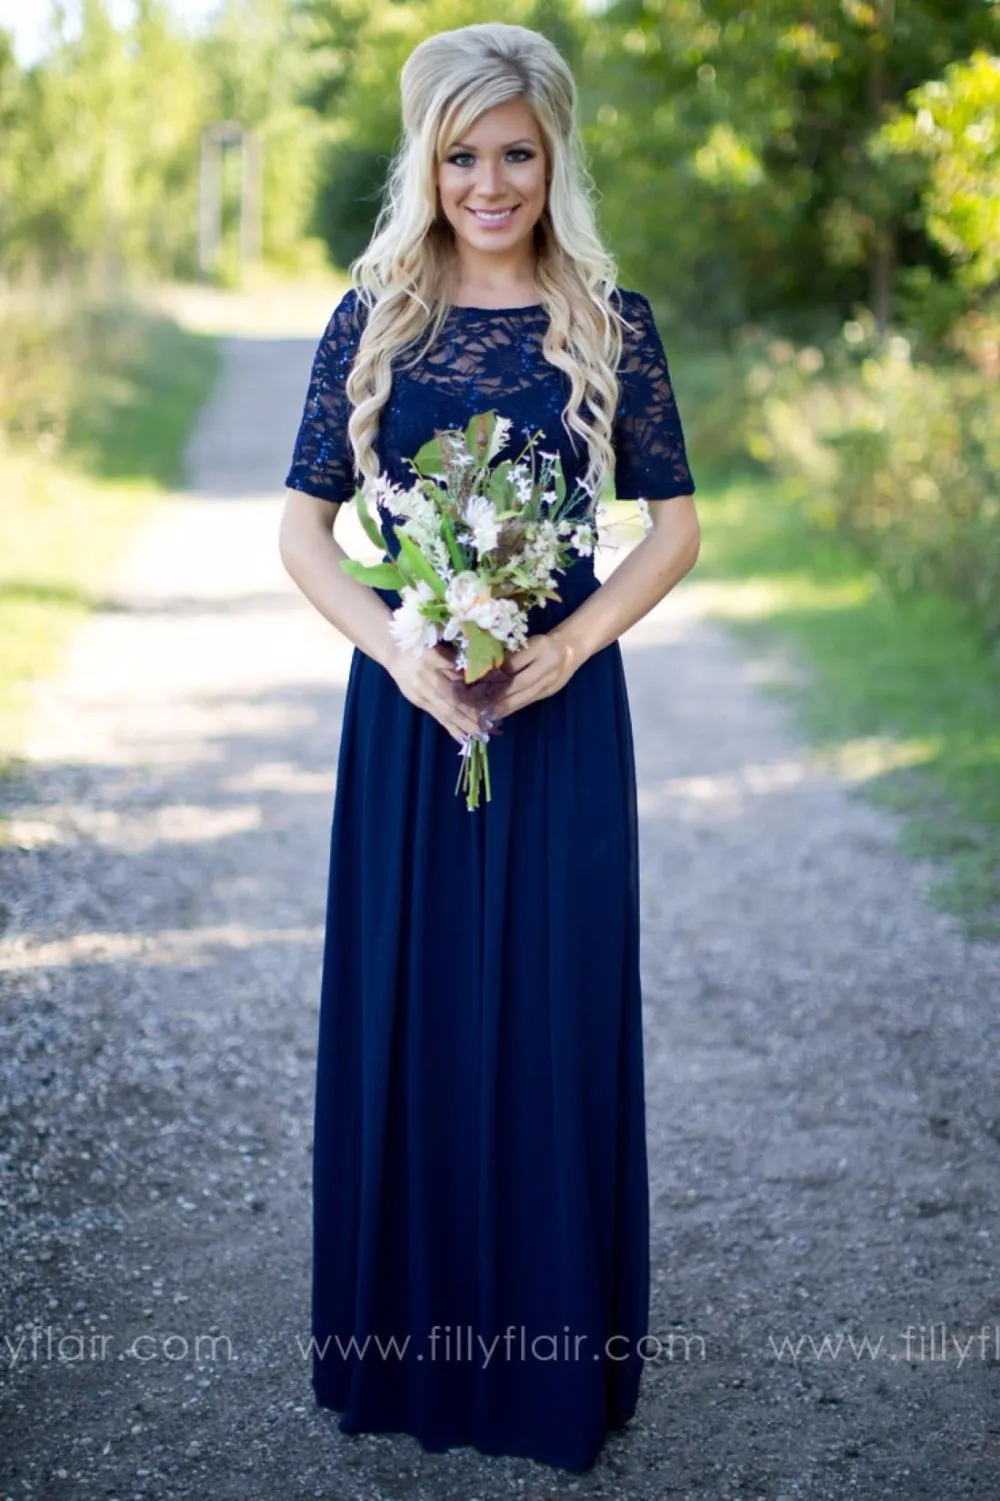 Sparkly кружева королевские синие длинные скромные платья подружки невесты с половиной рукава деревенские женщины формальные вечерние свадебные платья на заказ